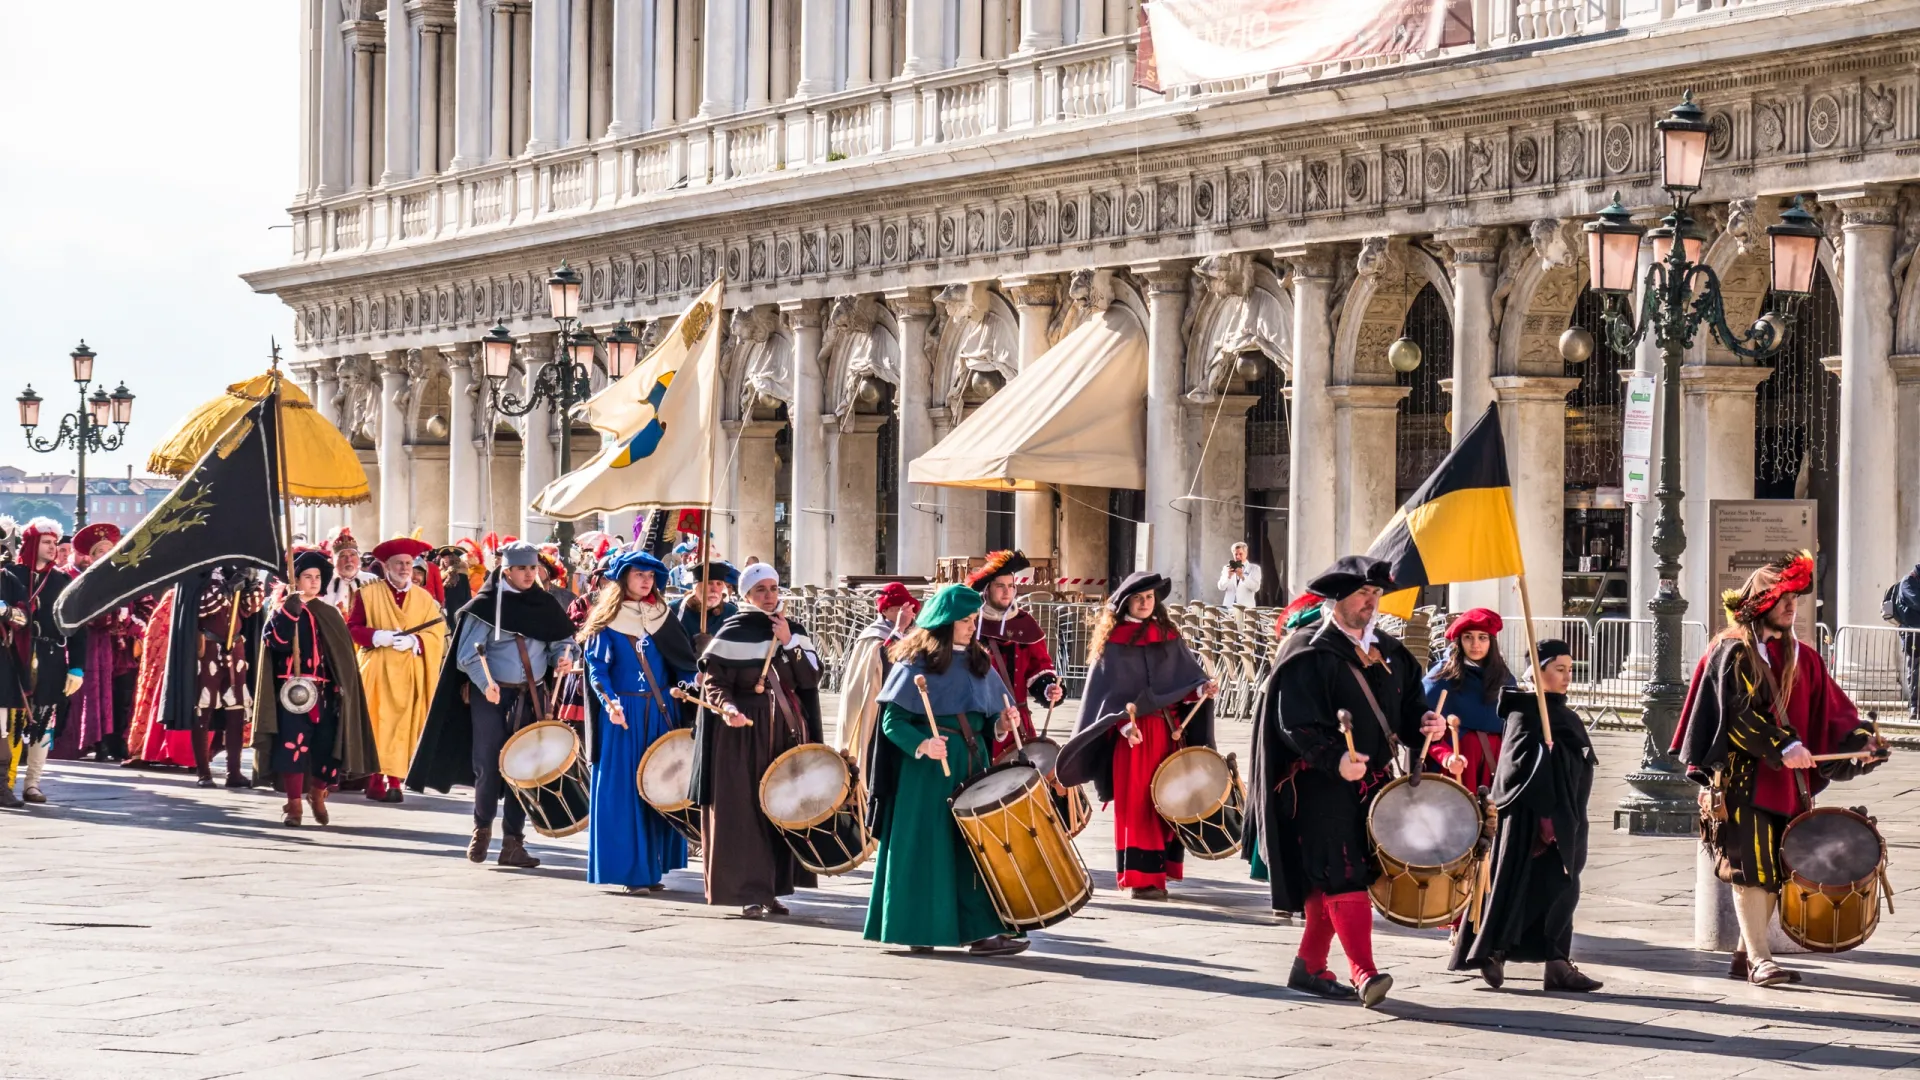 Главные события карнавала в Венеции — на площади Сан-Марко. Фото:  FooTToo / Shutterstock / Fotodom